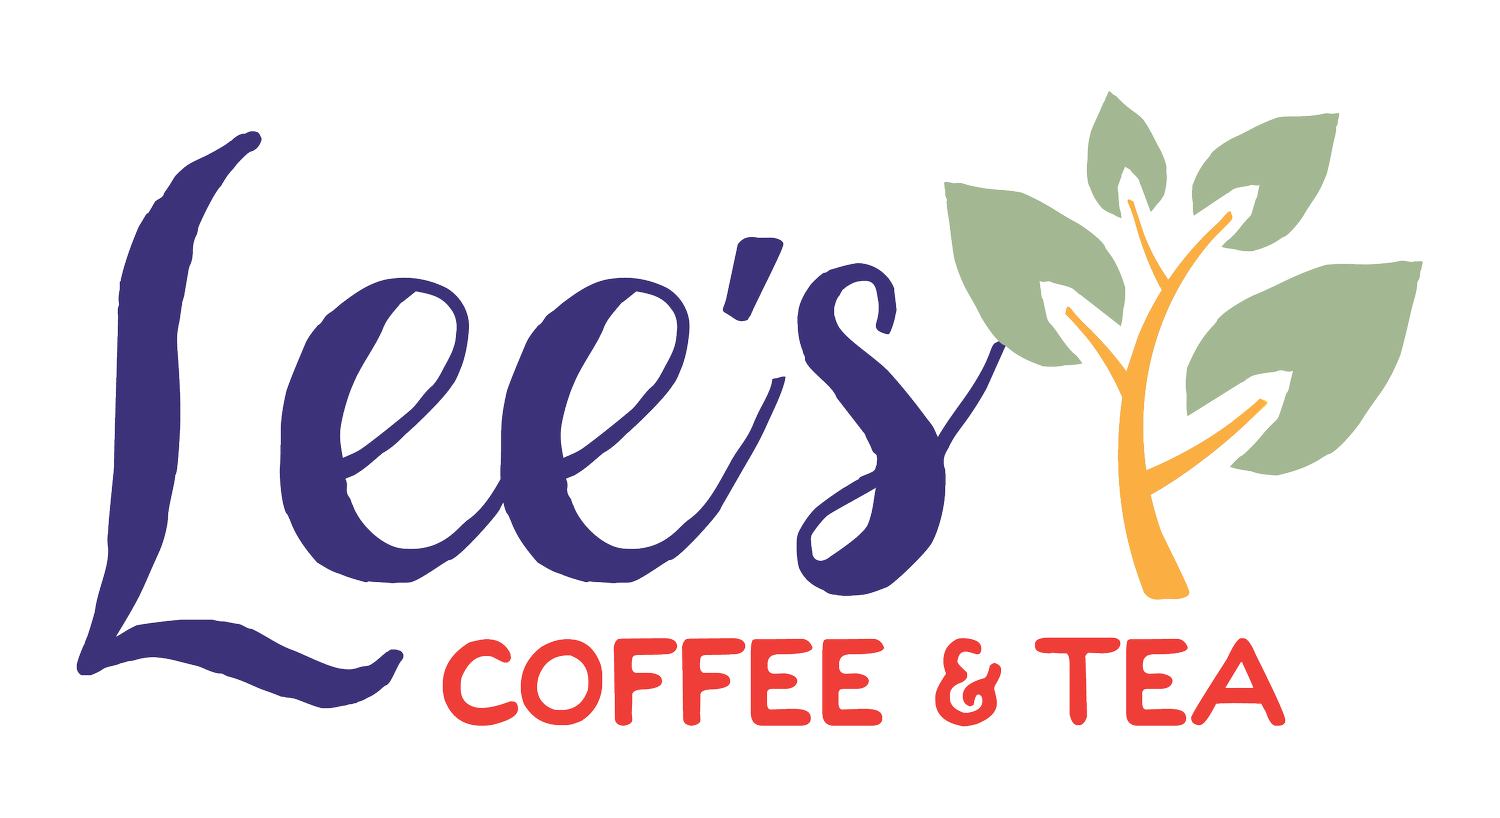 Lee's Coffee & Tea